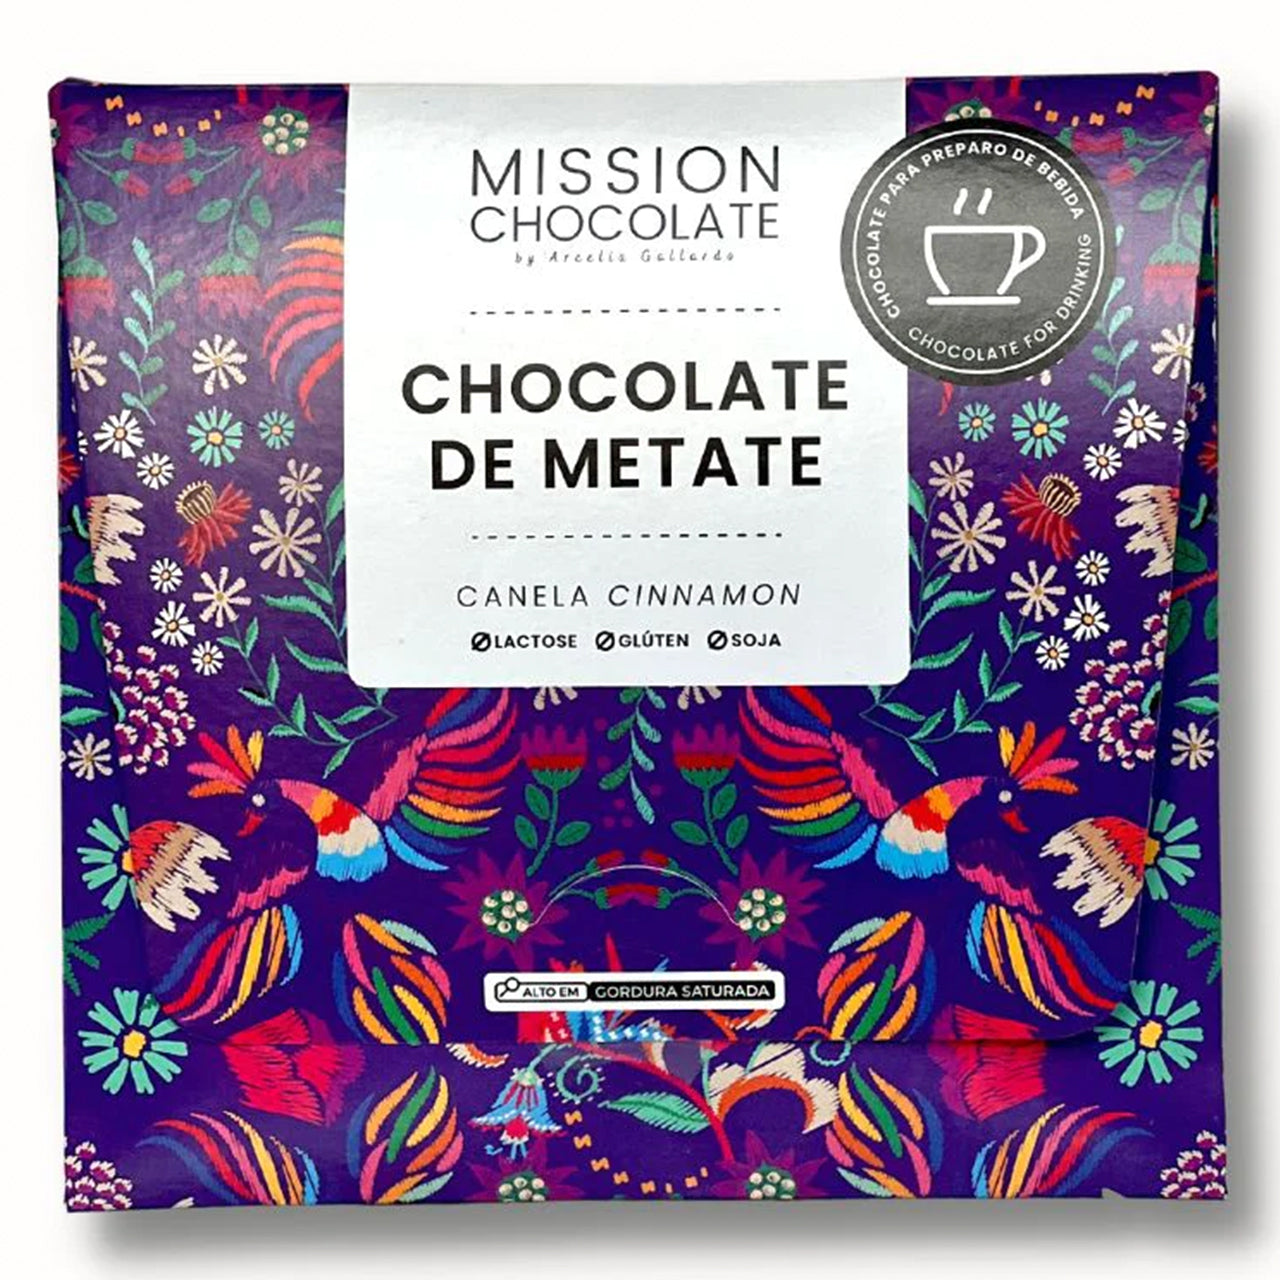 MISSION CHOCOLATE メタテチョコレート（シナモン）